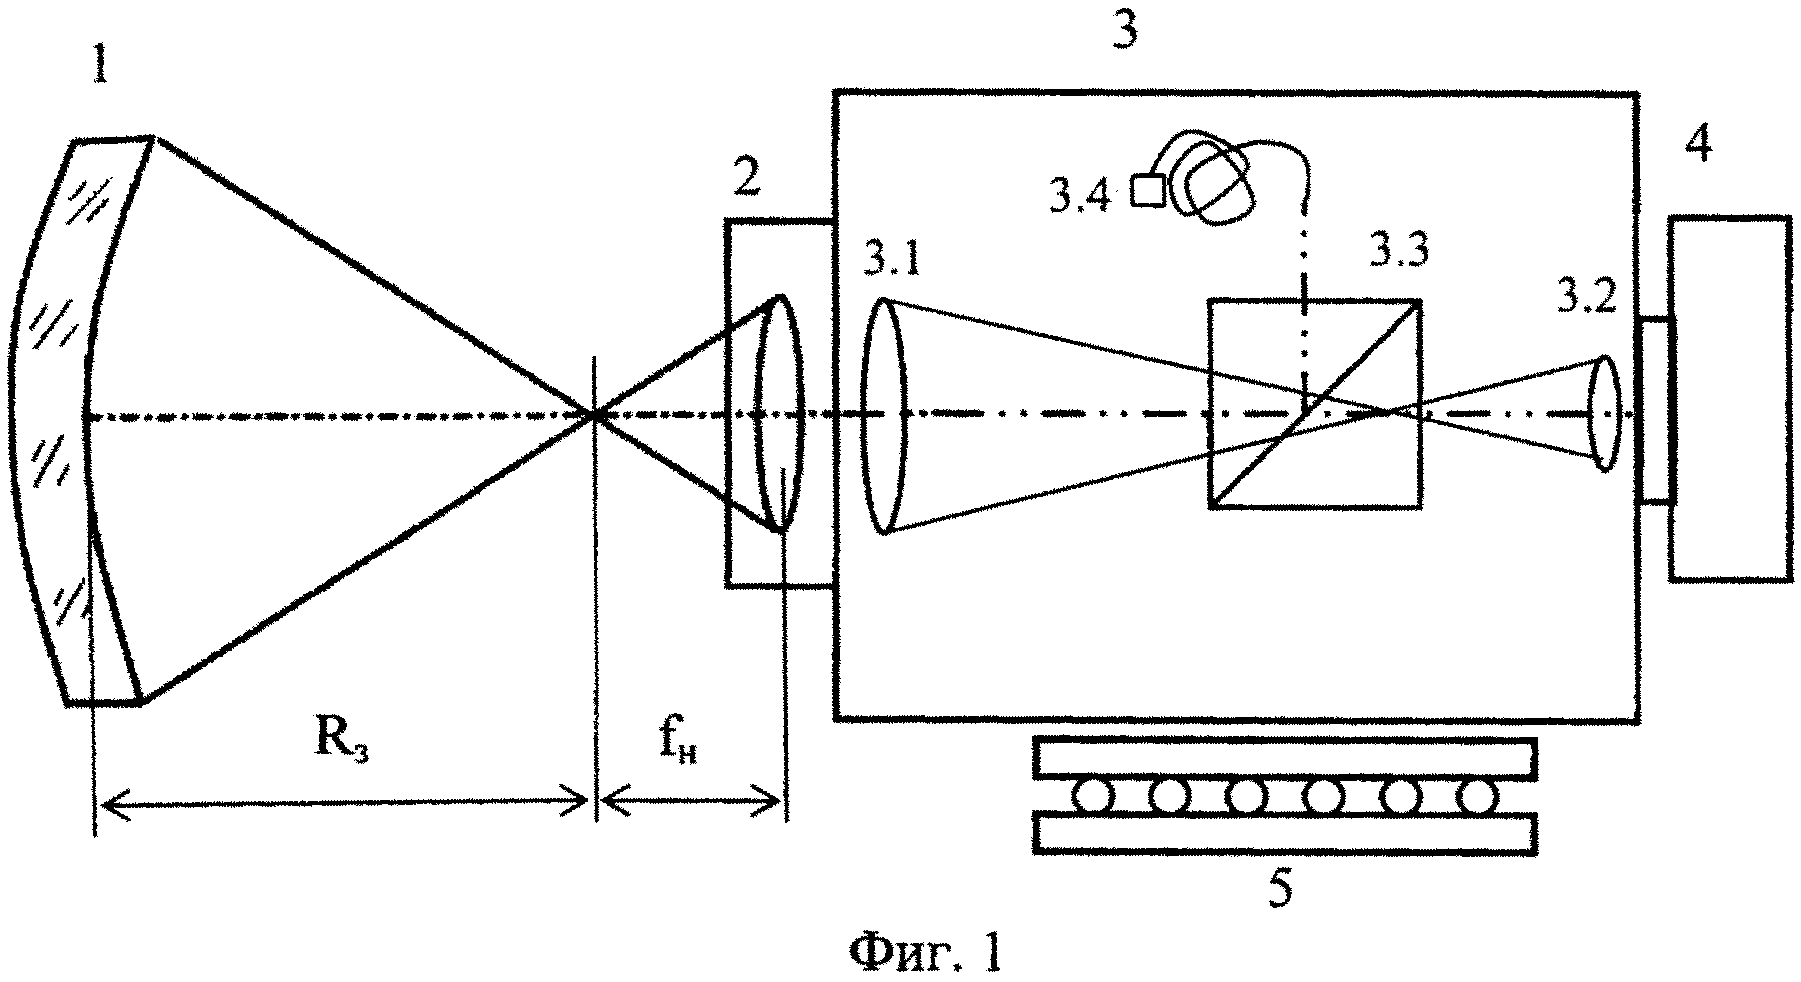 Устройство и способ определения радиуса кривизны крупногабаритных оптических деталей на основе датчика волнового фронта